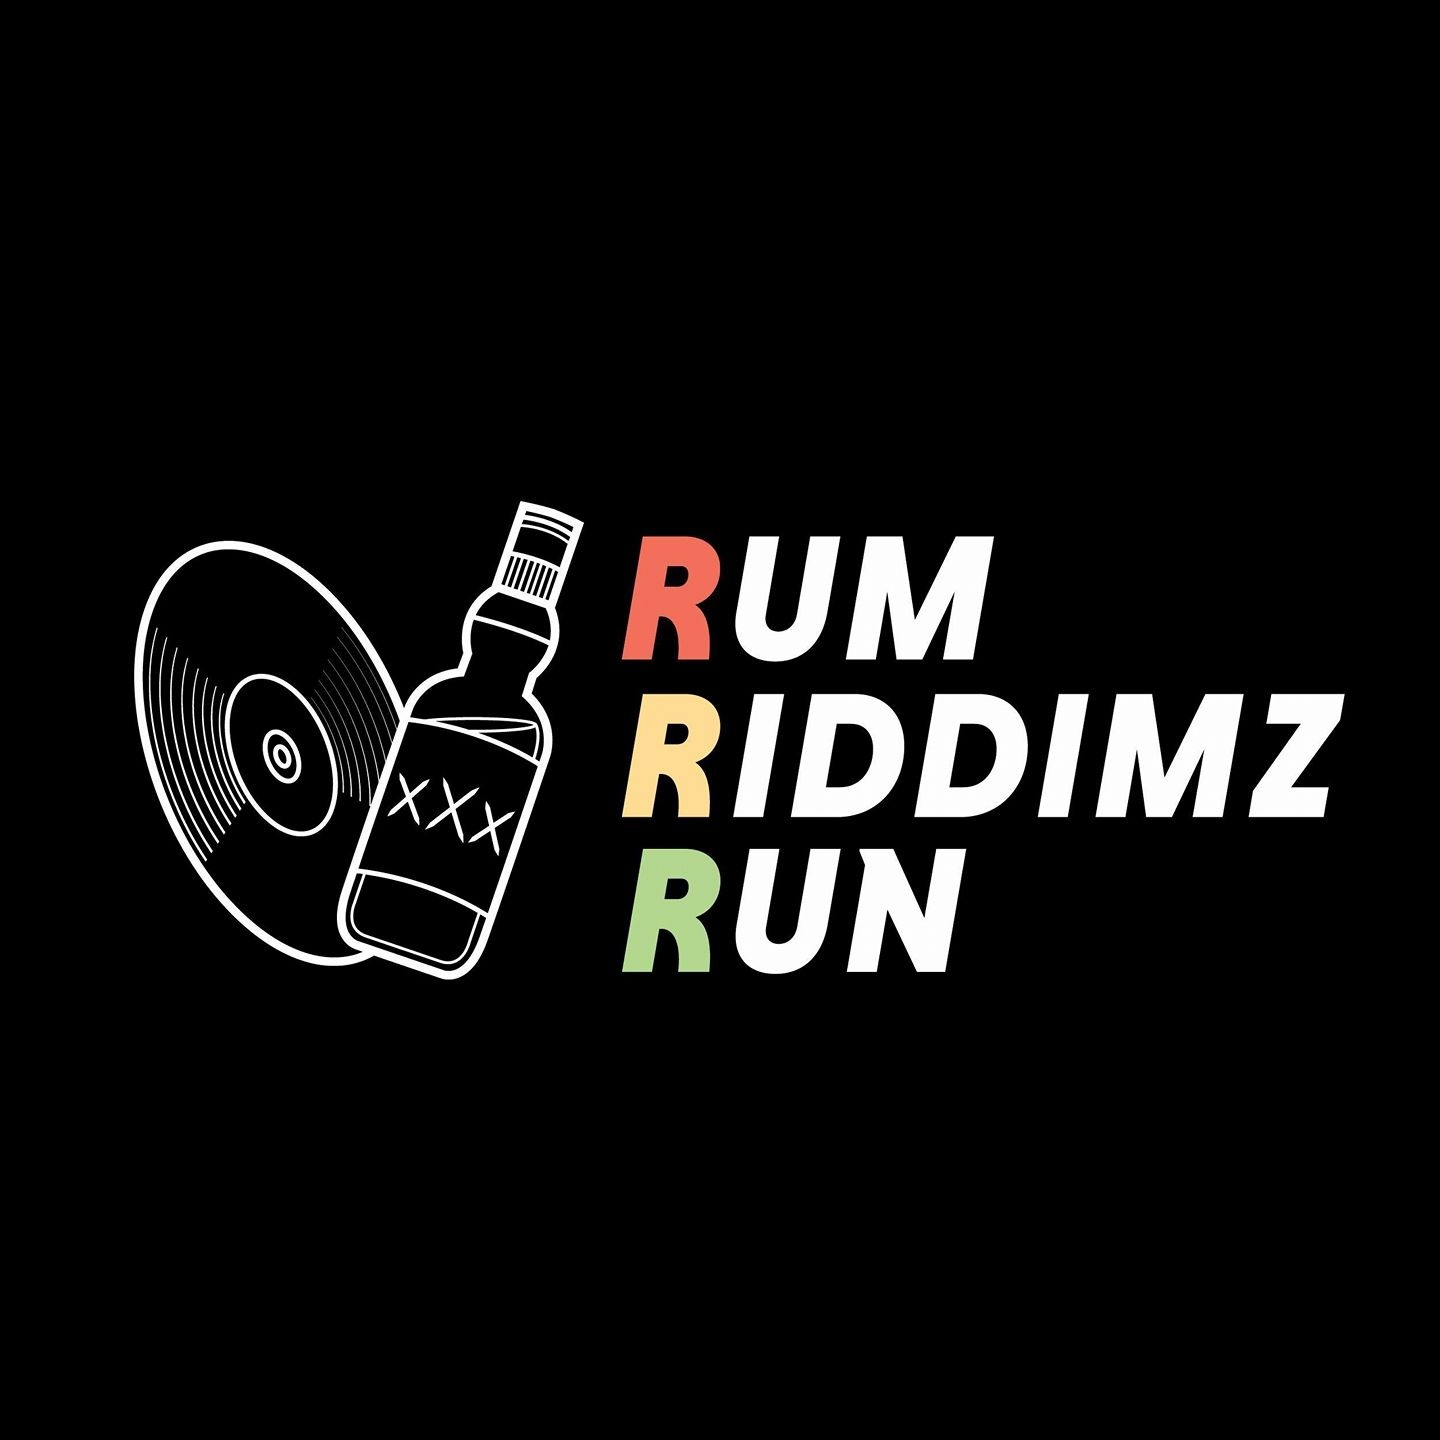 Rum Riddimz Run